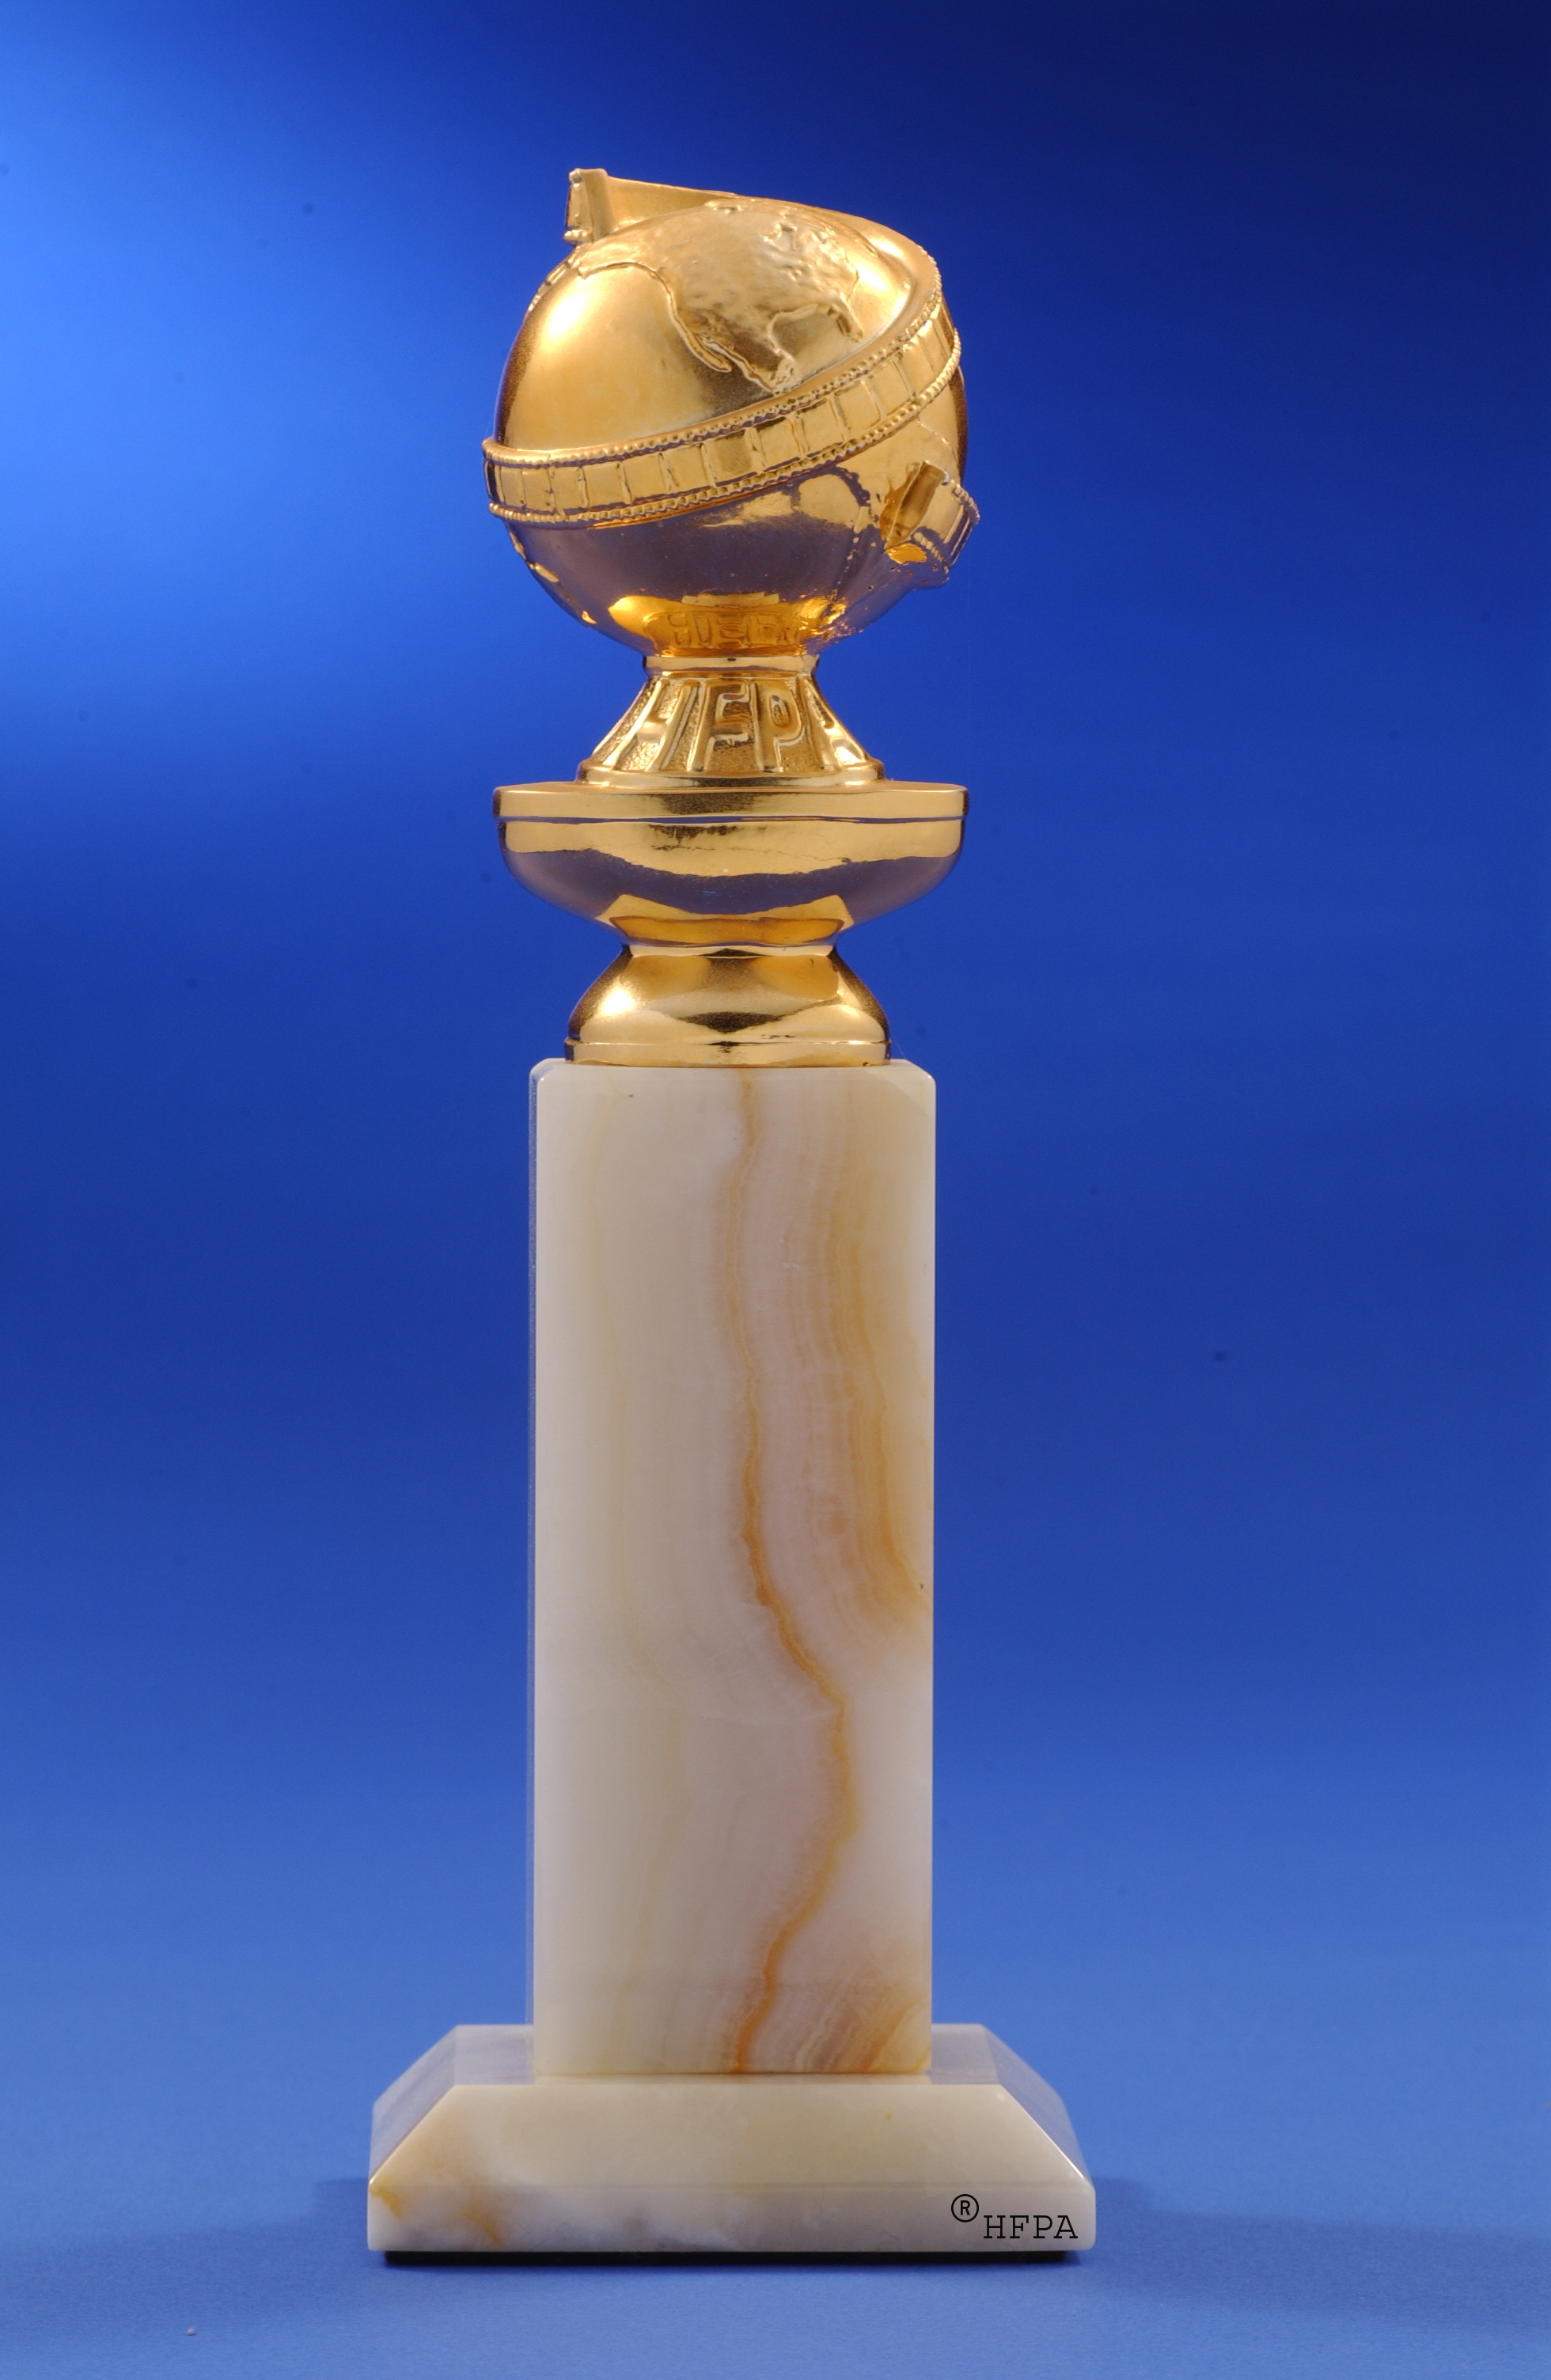 the golden globe awards